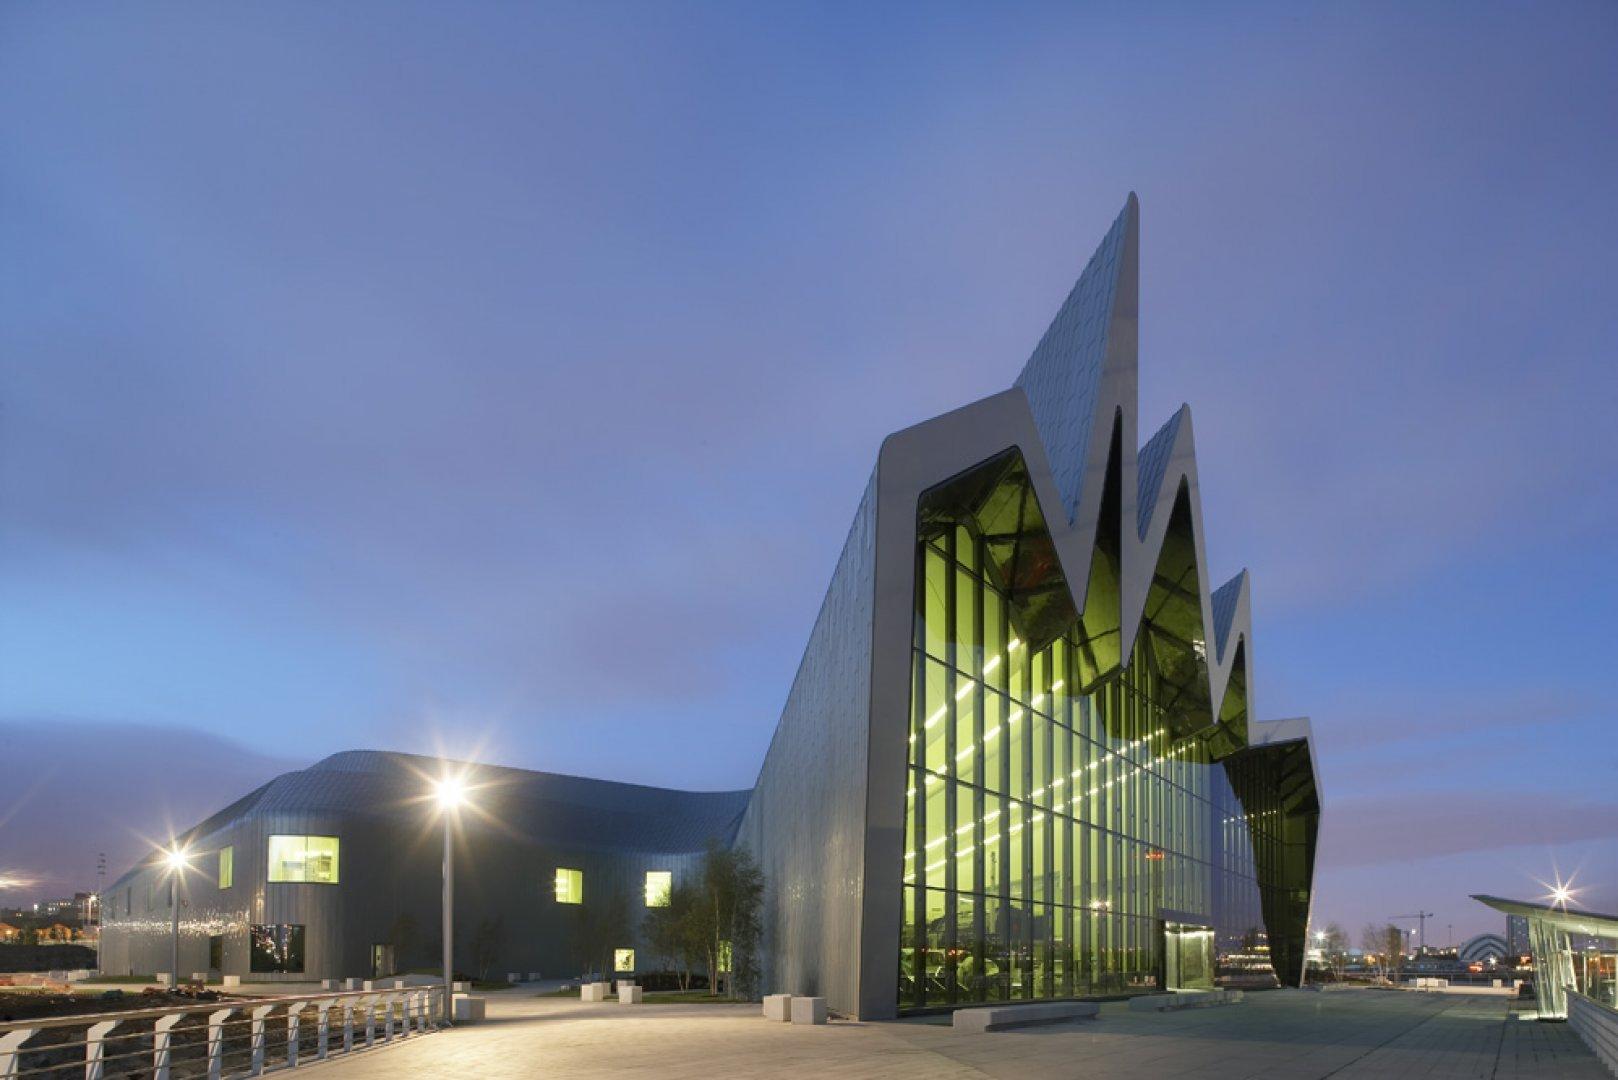 Riverside Museum di Glasgow (2011). Questo progetto è stato premiato con il European Museum of the Year 2013